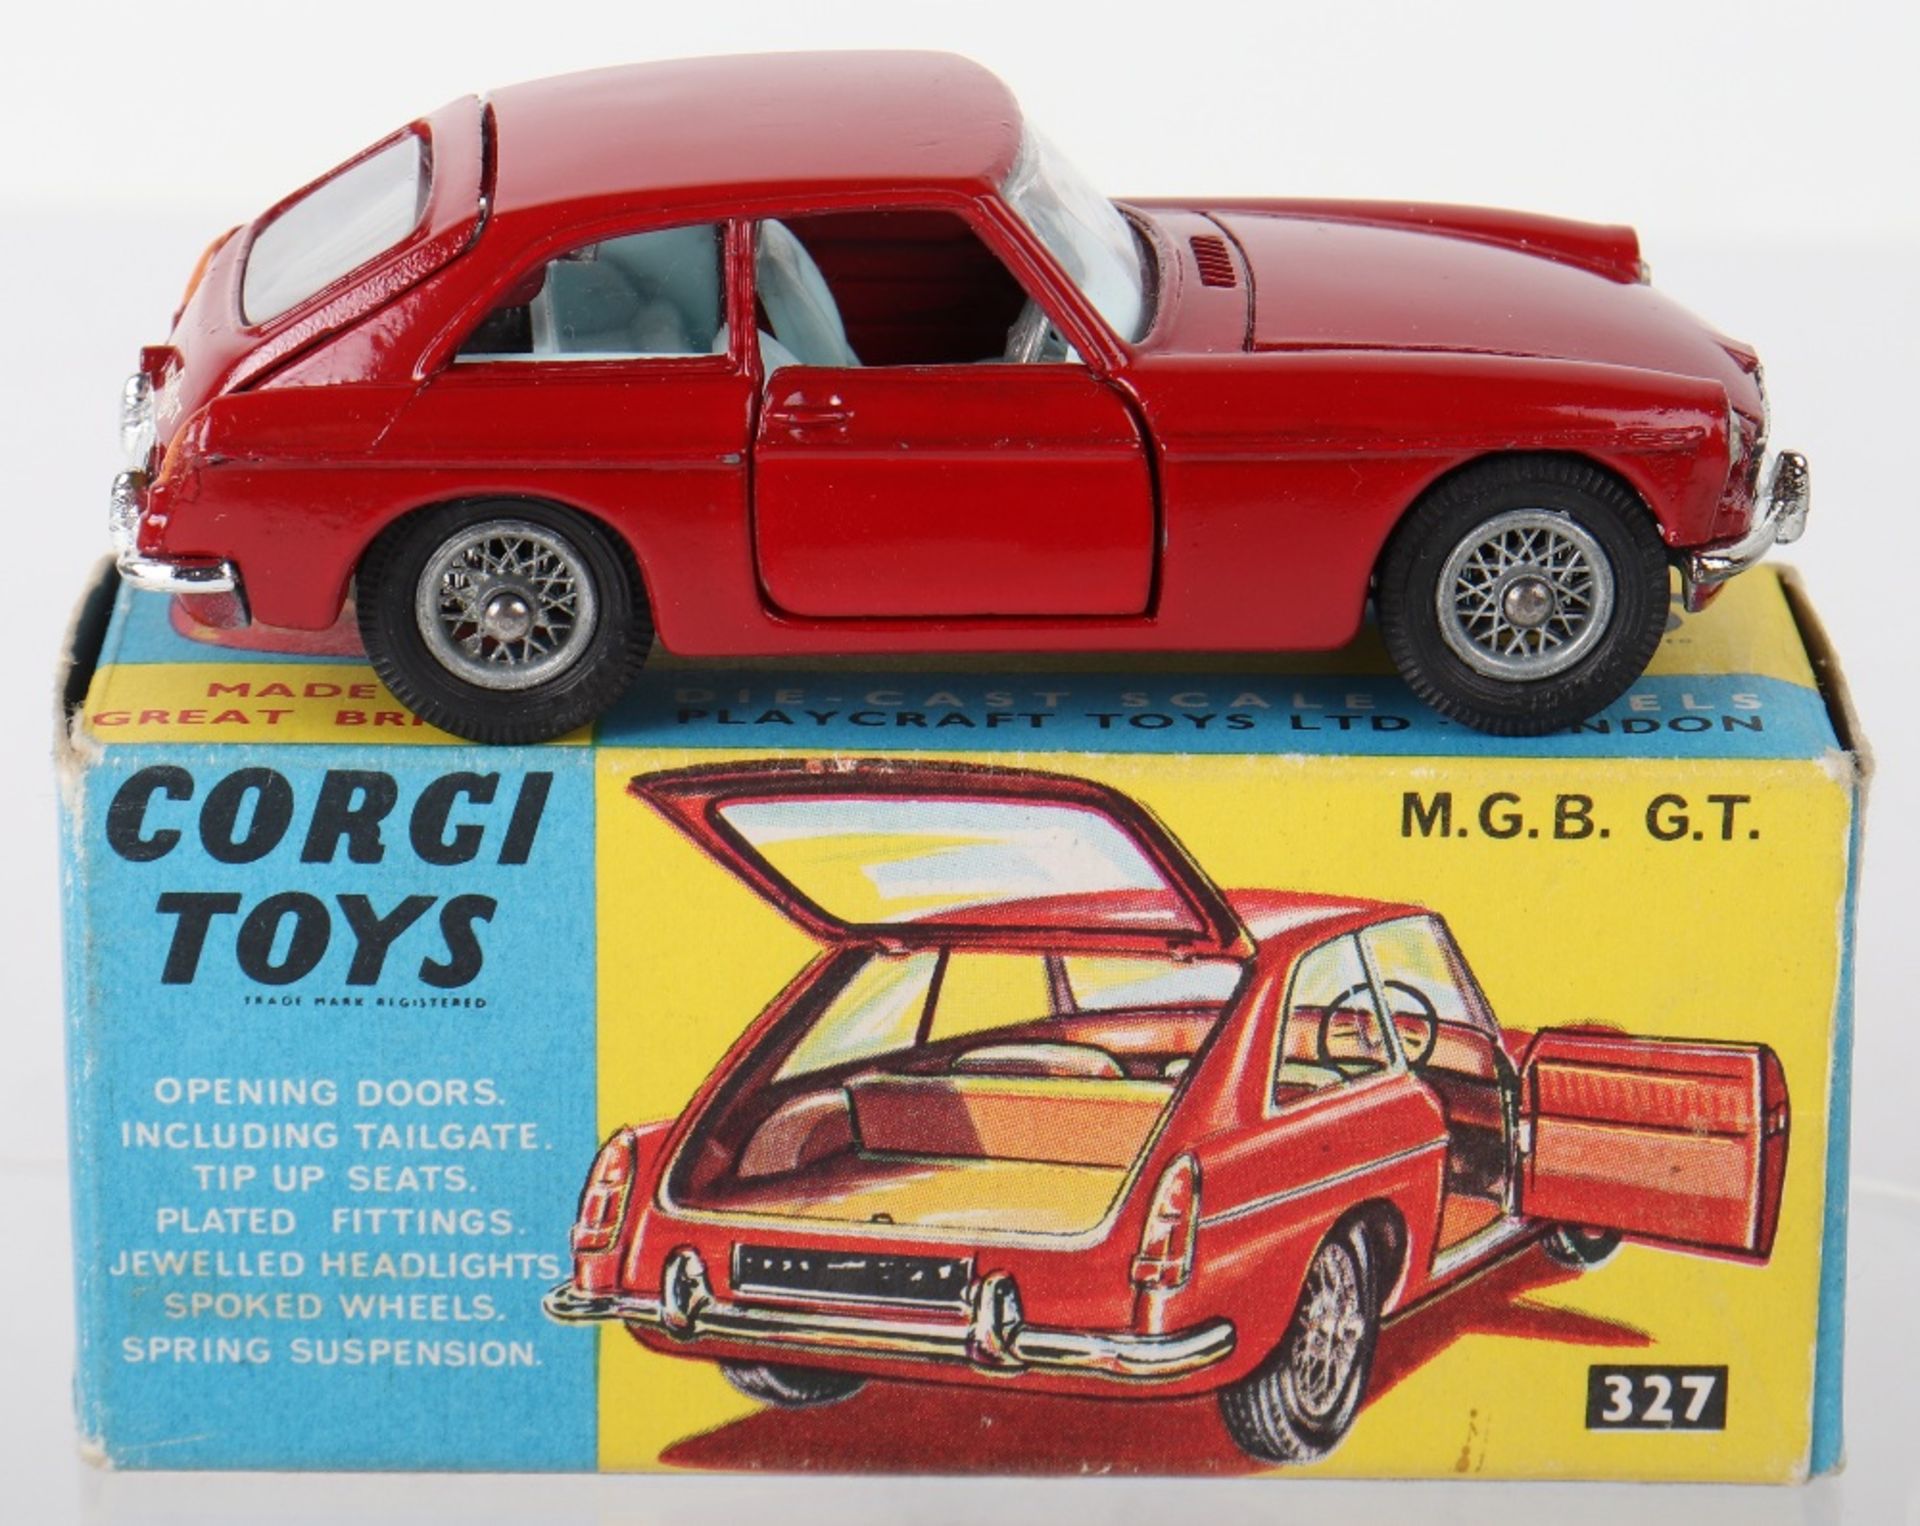 Corgi Toys 327 M.G.B G.T.